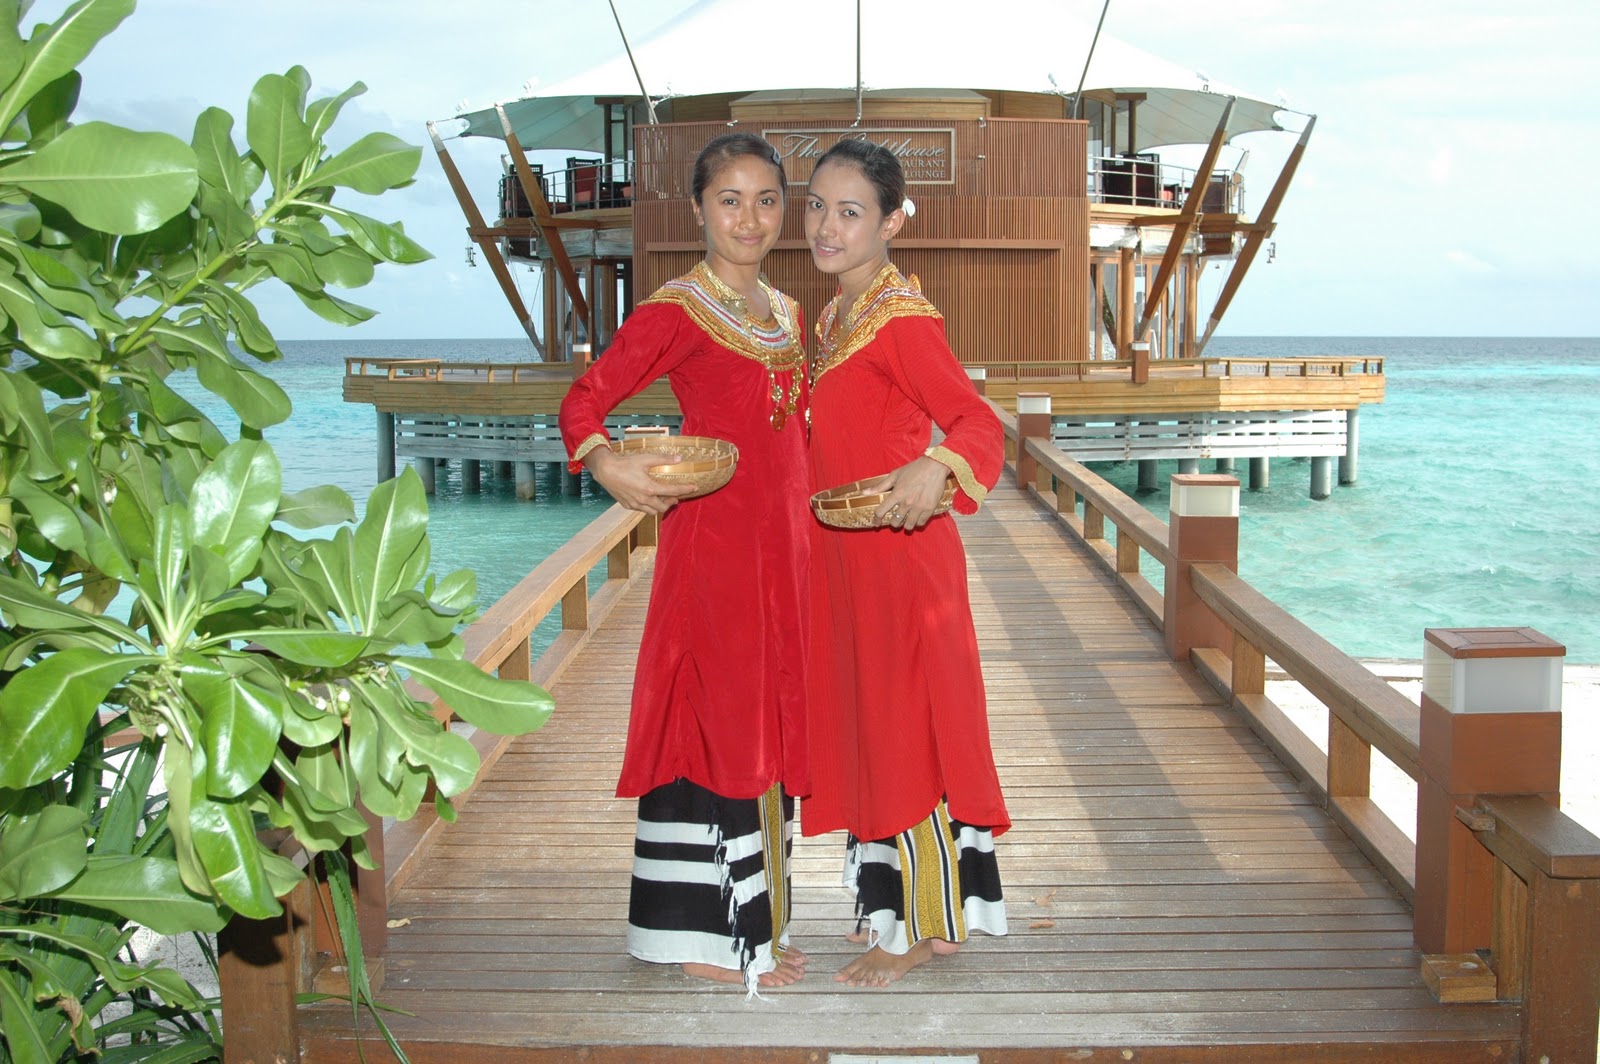 Maldivian traditional clothing